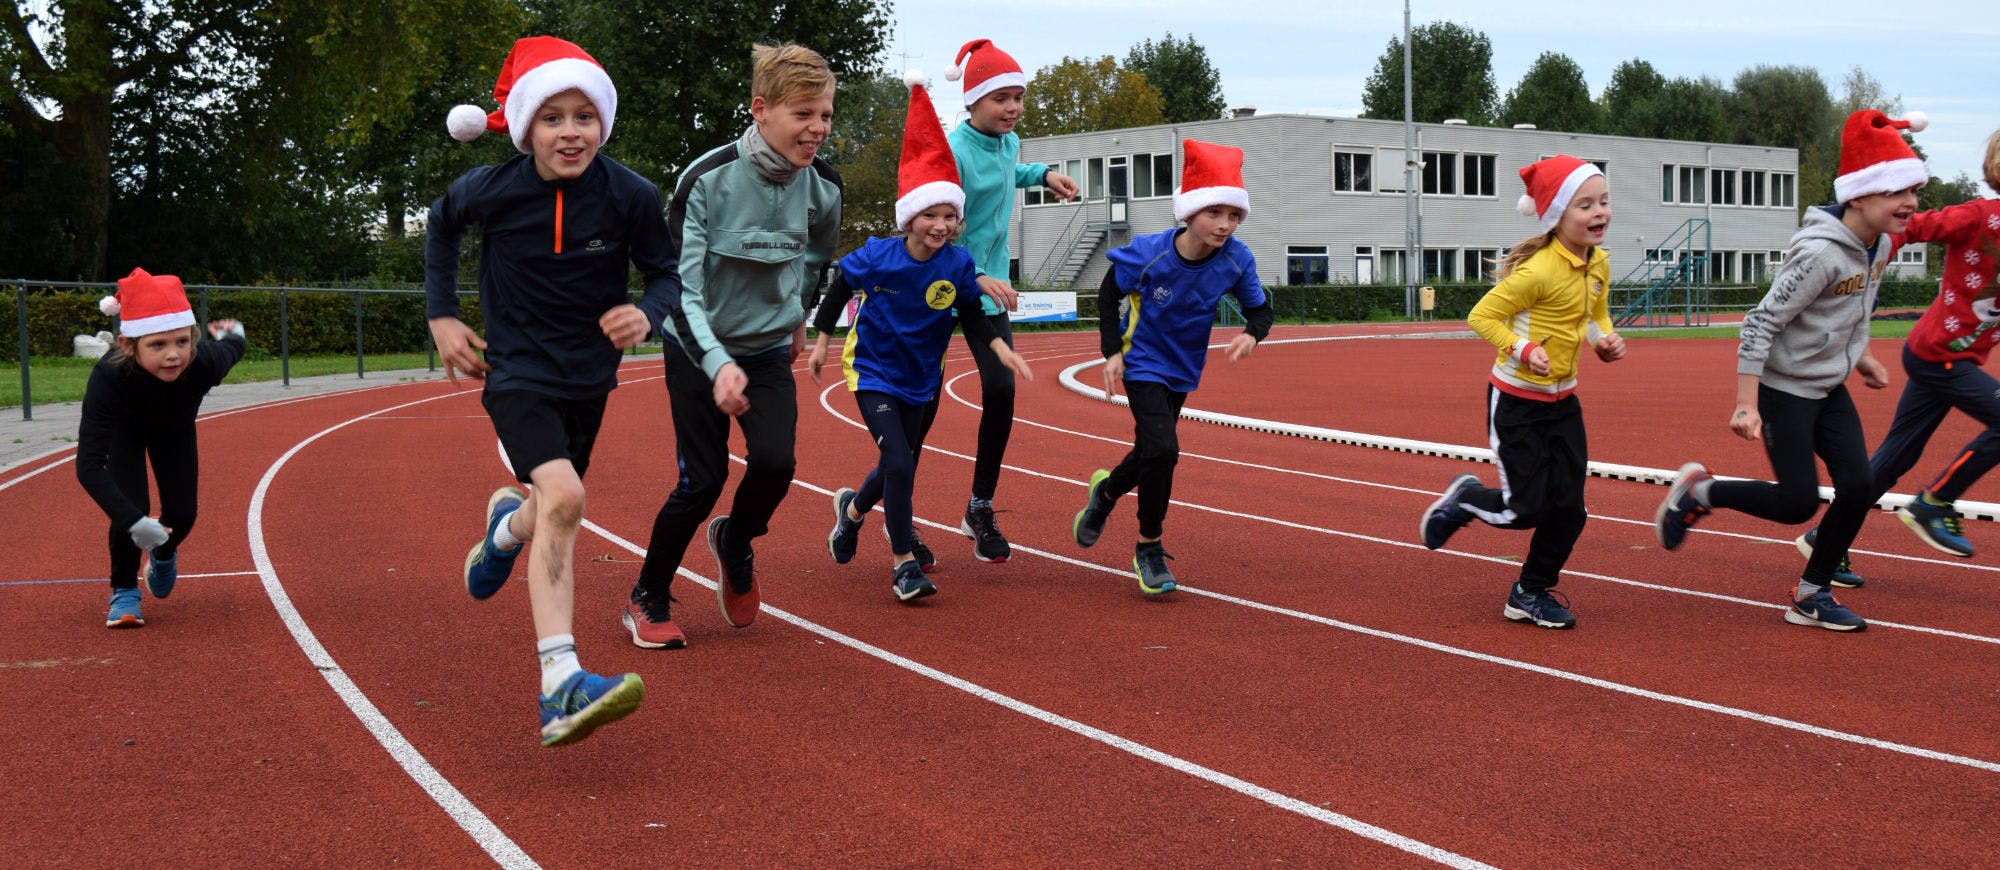 Kinderen in kerstoutfit op de atletiekbaan van Flevo Delta